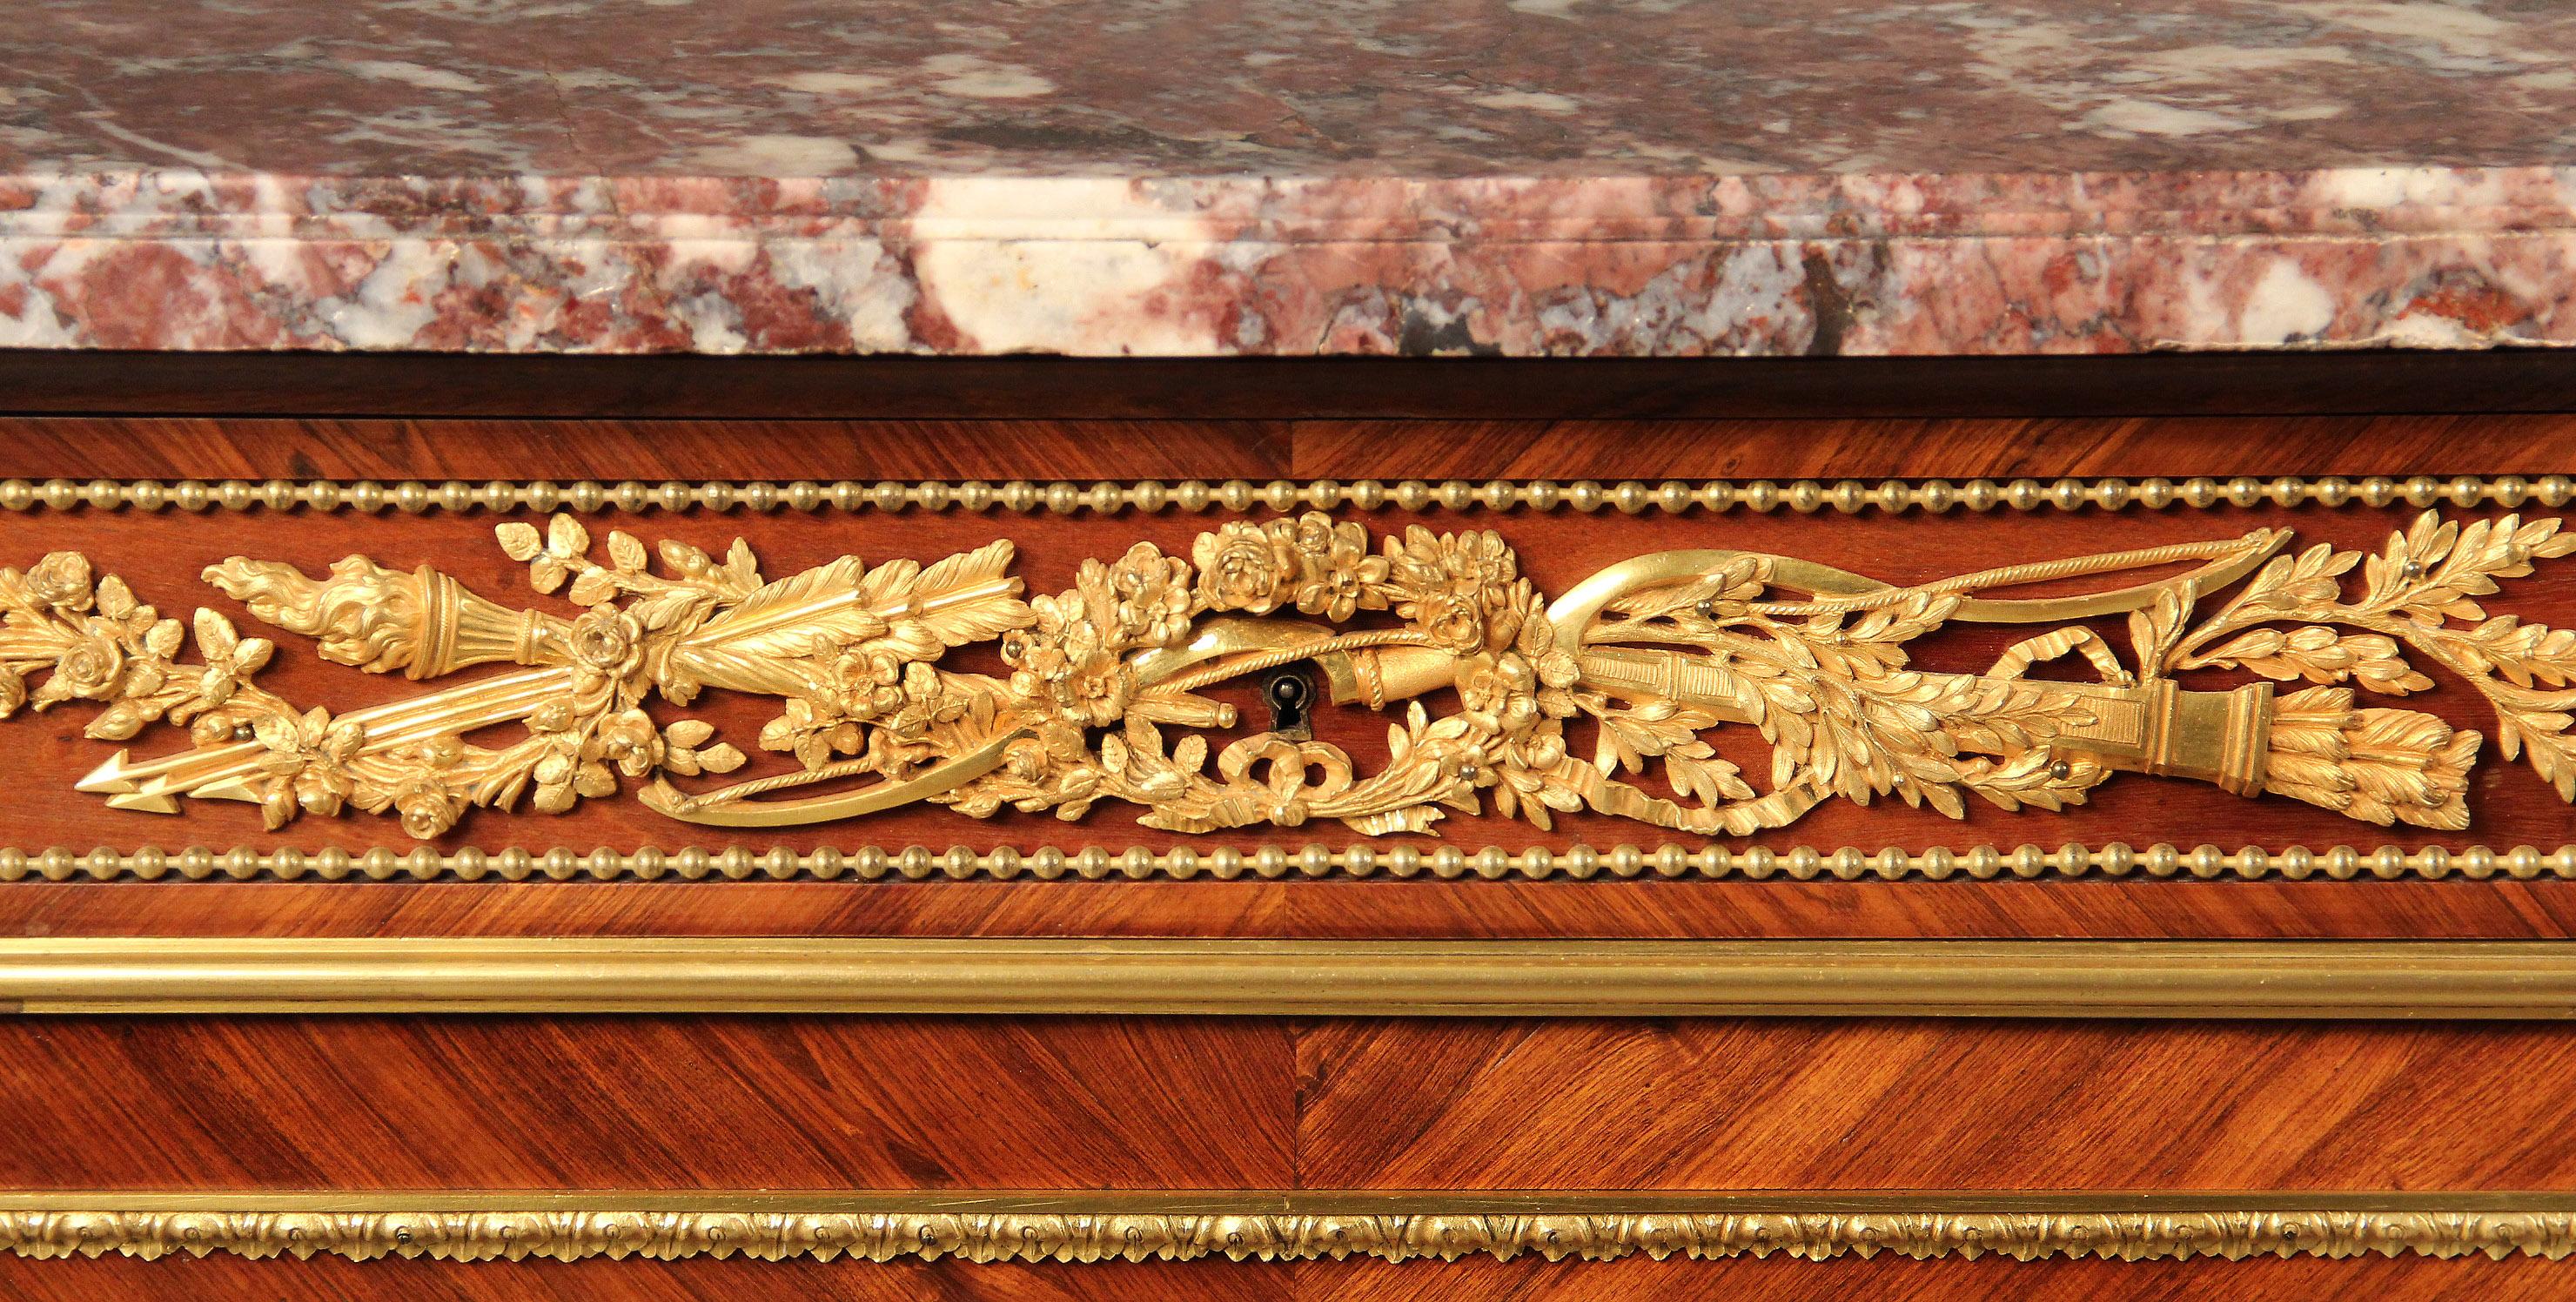 Eine beeindruckende späten 19. Jahrhundert vergoldete Bronze montiert Louis XVI-Stil Schrank / Server Von Henry Dasson

Henry Dasson

Eine demilune Marmorplatte über einer zentralen langen Schublade mit Bronzebeschlägen, die einen Köcher, einen